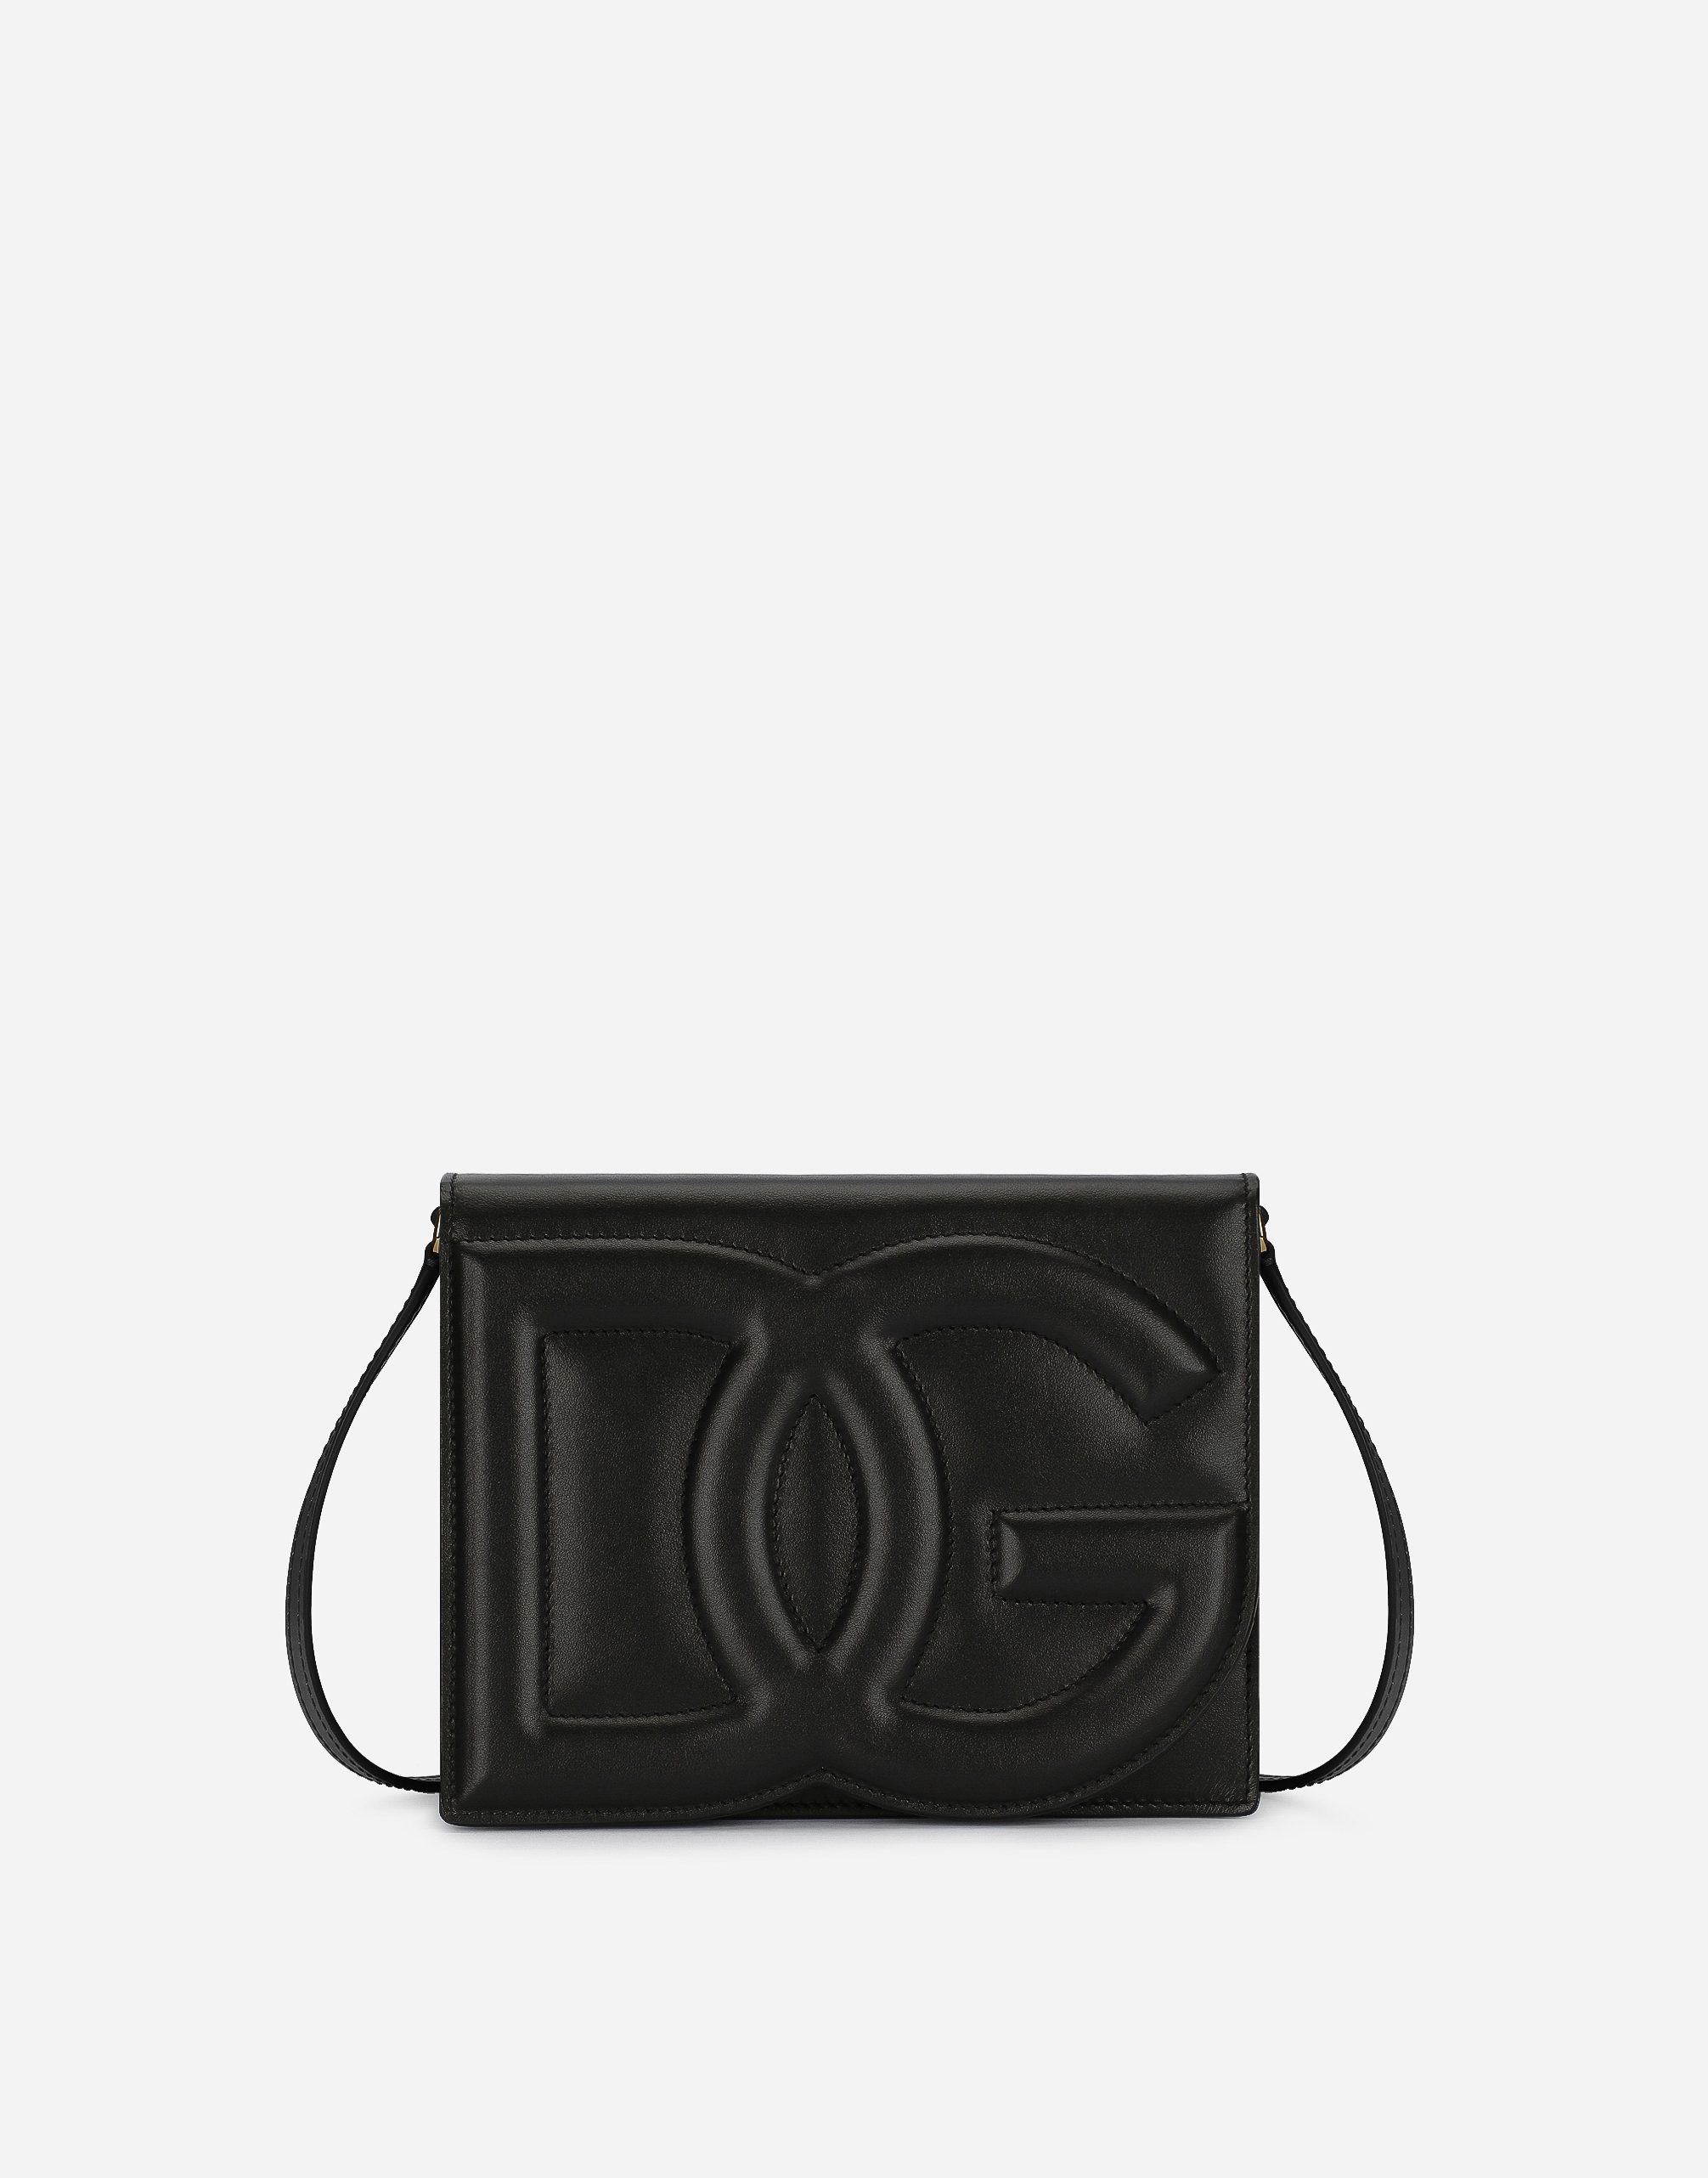 Dolce & Gabbana Calfskin Crossbody Bag With Logo In Black